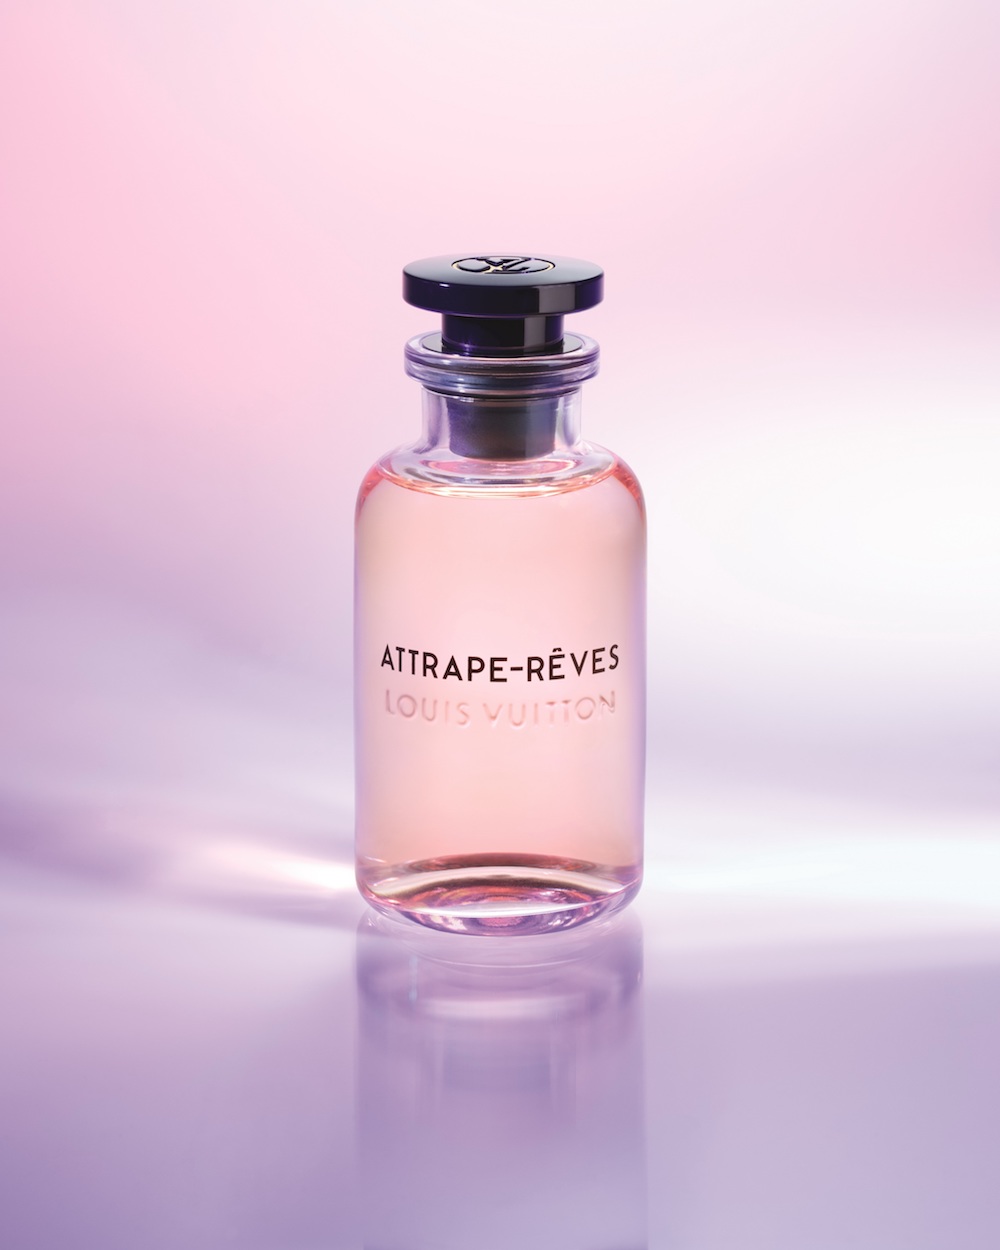 Attrape-Rêves Louis Vuitton parfum - un nouveau parfum pour femme 2018